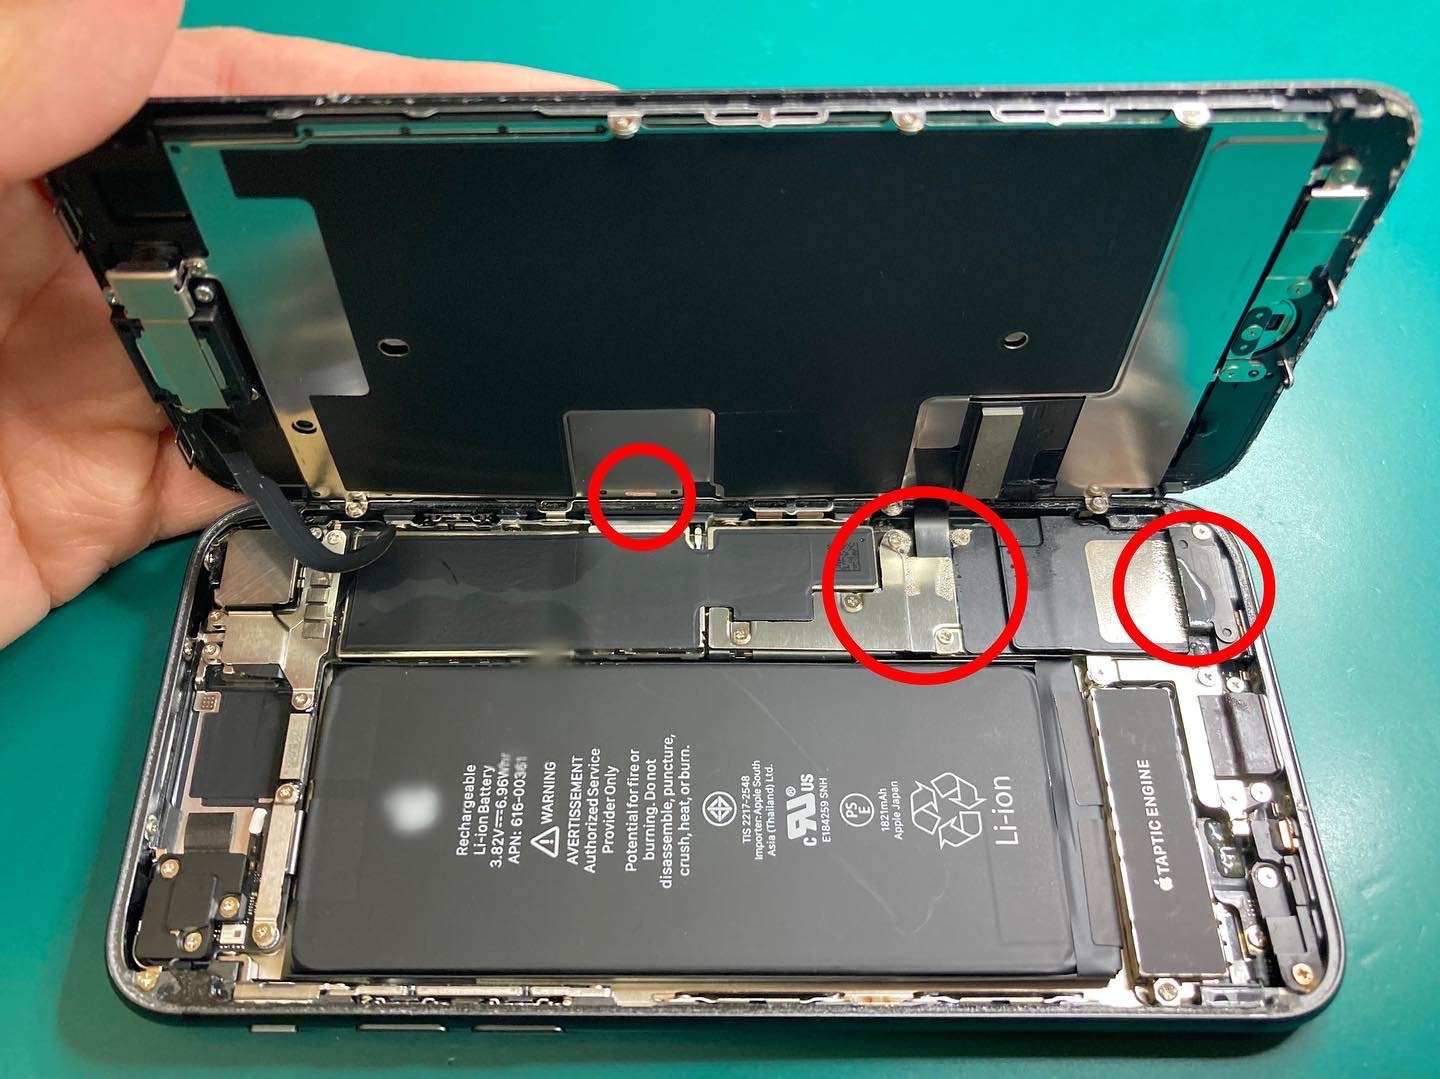 水没により液晶異常が発生しているiPhoneの水没復旧修理／フロントパネル交換修理のご依頼をいただきました。